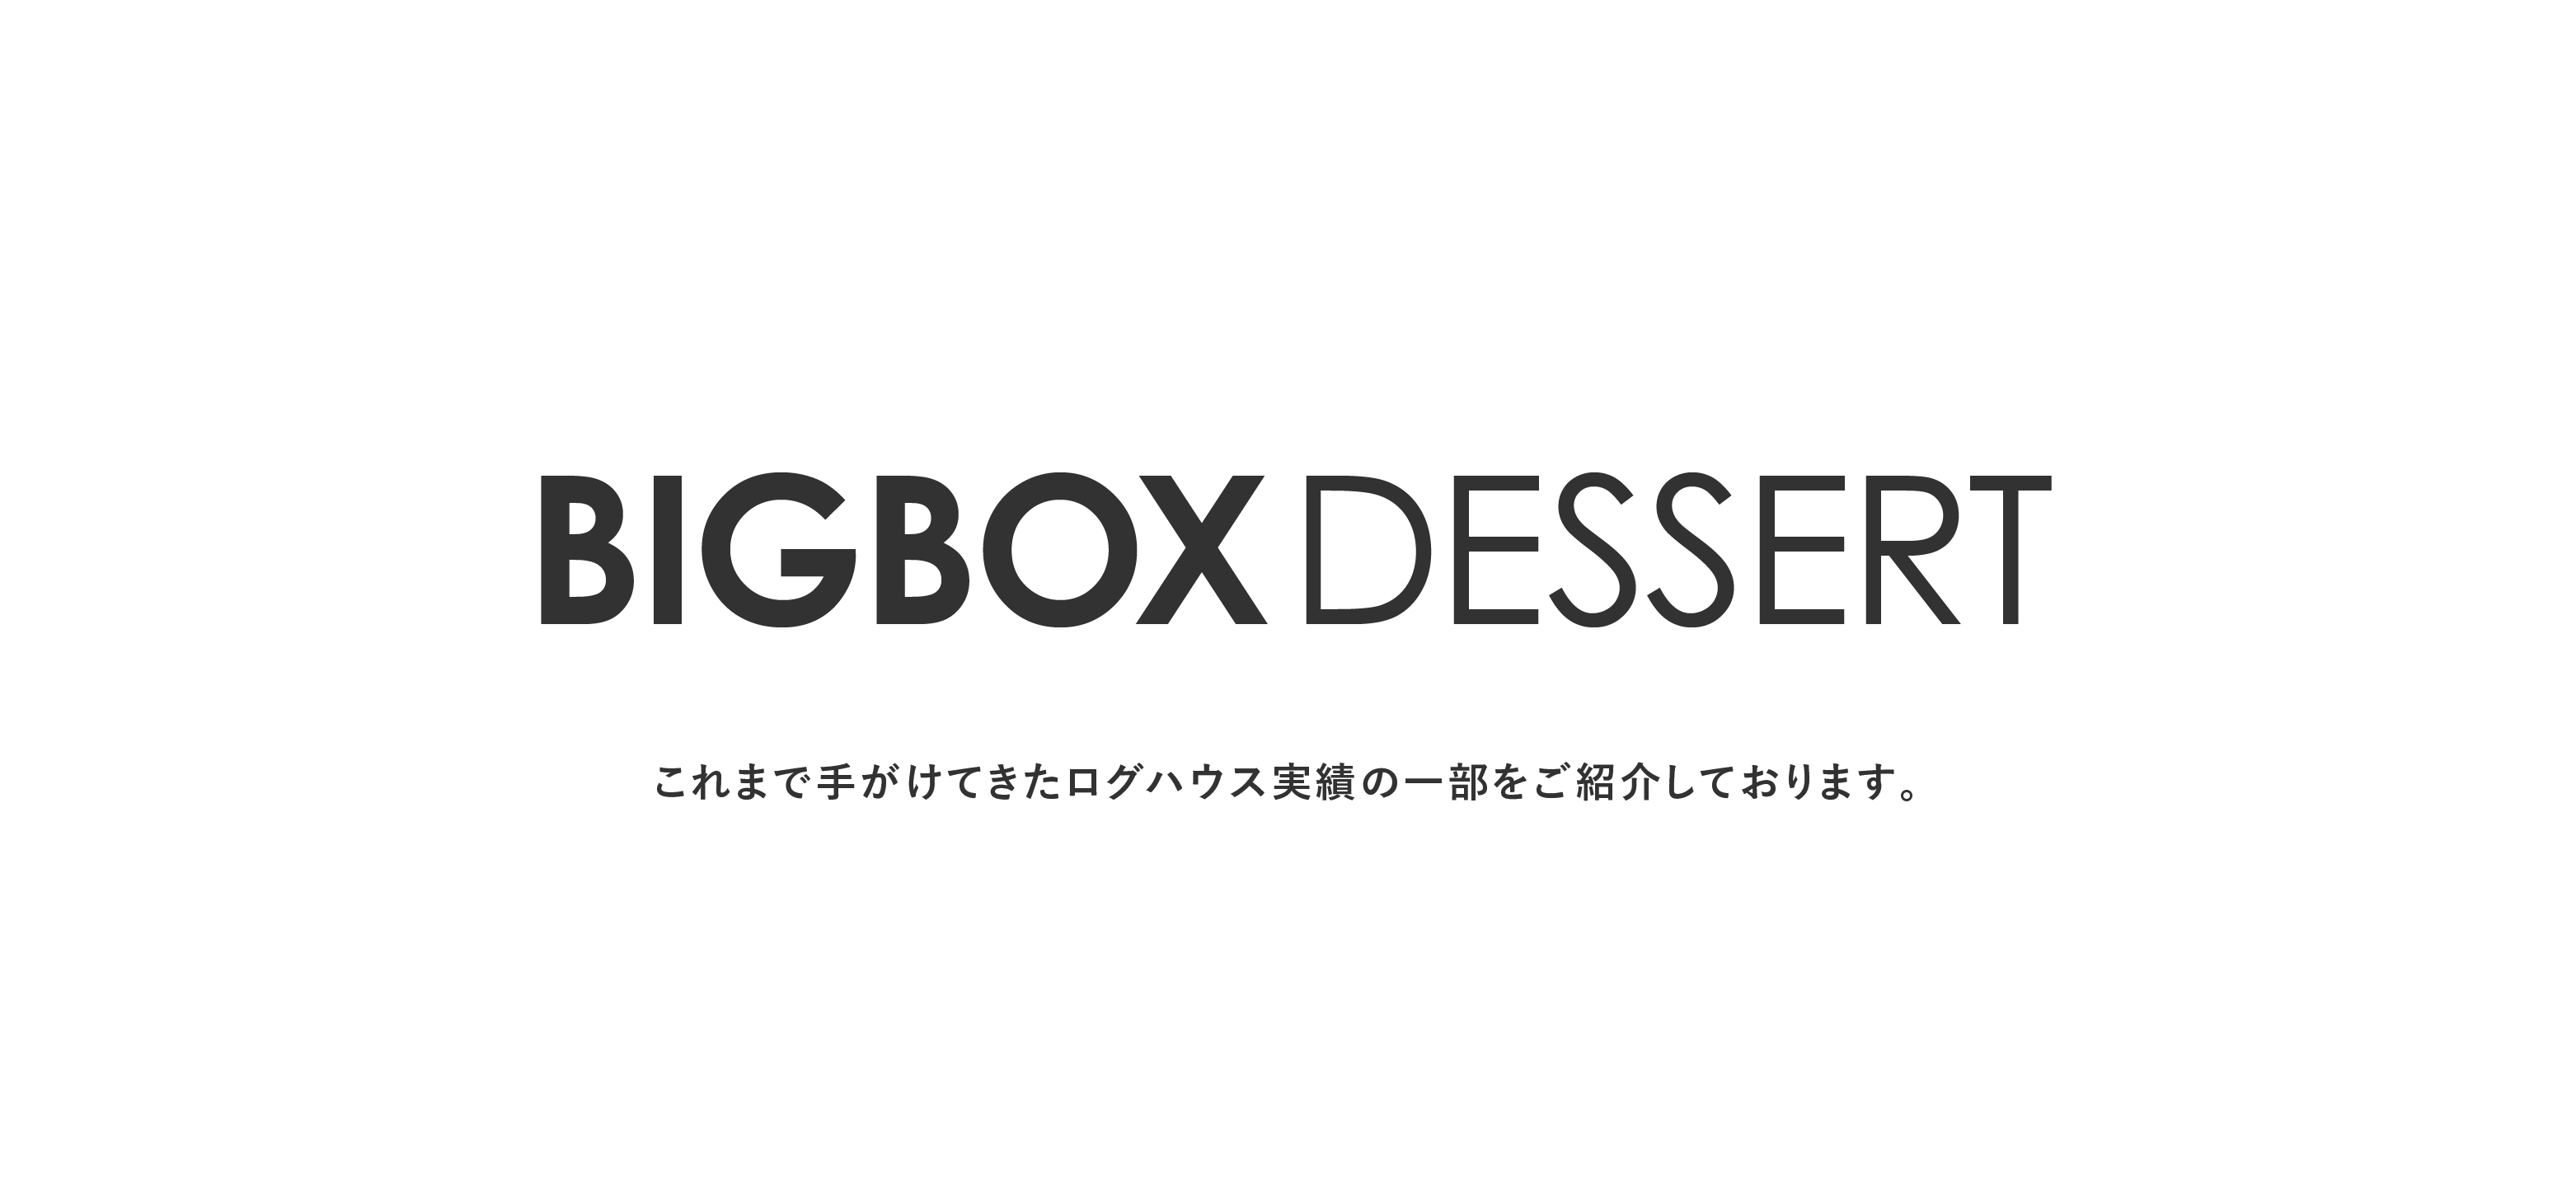 ログハウスのビックボックス,BIGBOX DESSERT,実績紹介